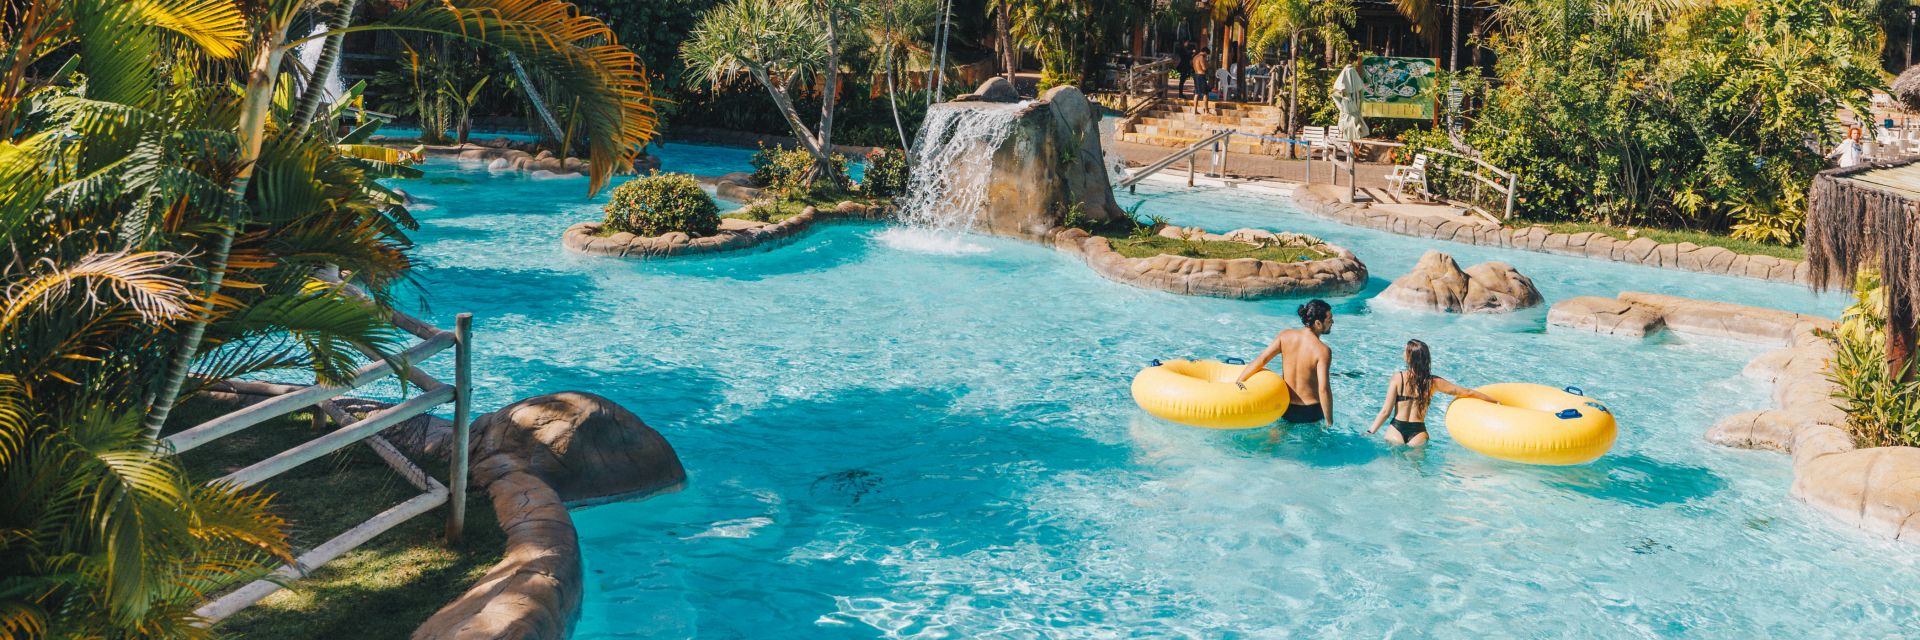 Por que visitar o parque aquático do Rio Quente nas suas férias?